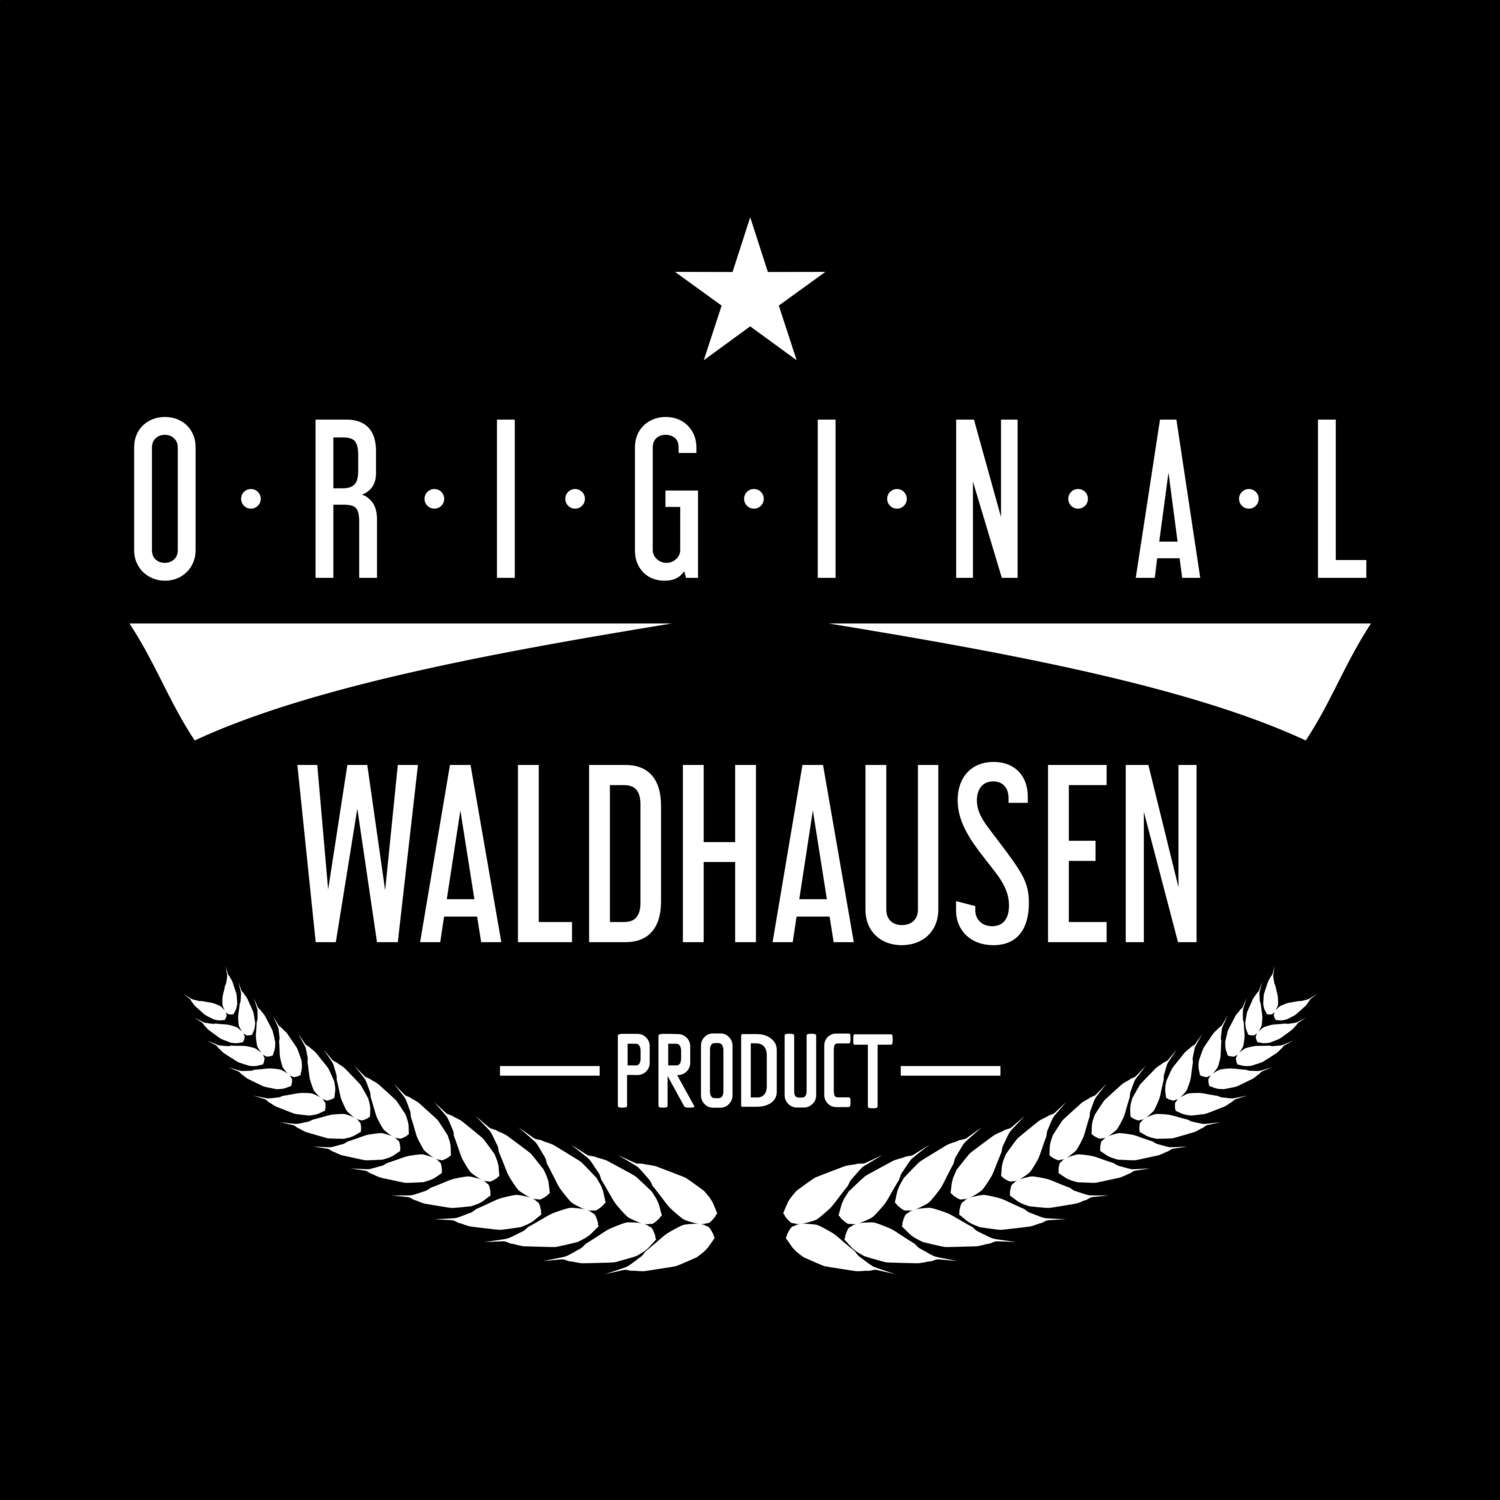 Waldhausen T-Shirt »Original Product«